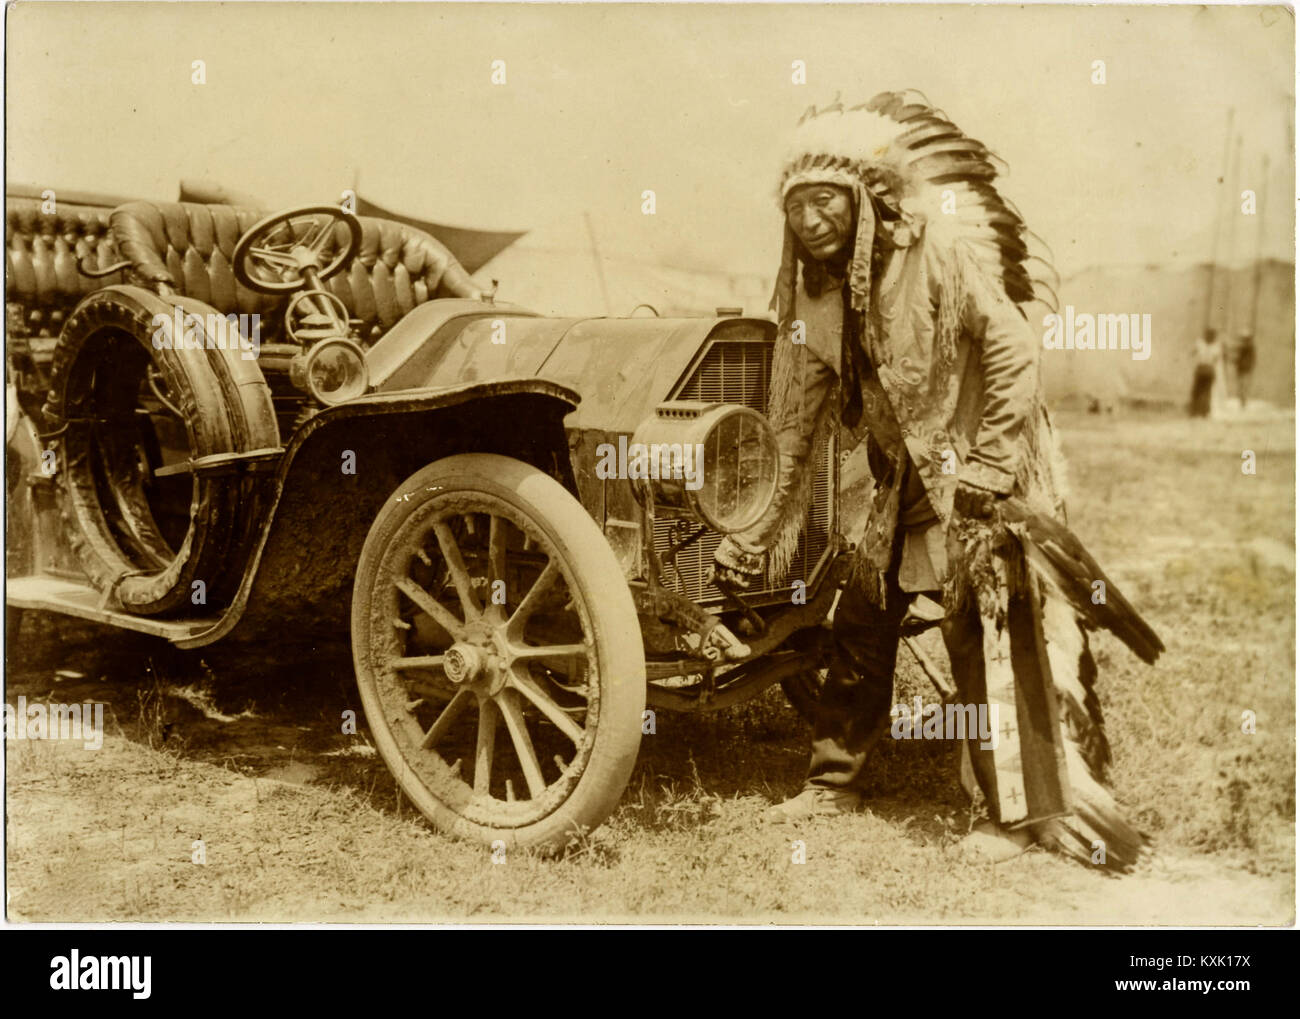 Native American Indian avec Full Regalia et coiffure. De Cheval à l'automobile - vers 1915. Banque D'Images